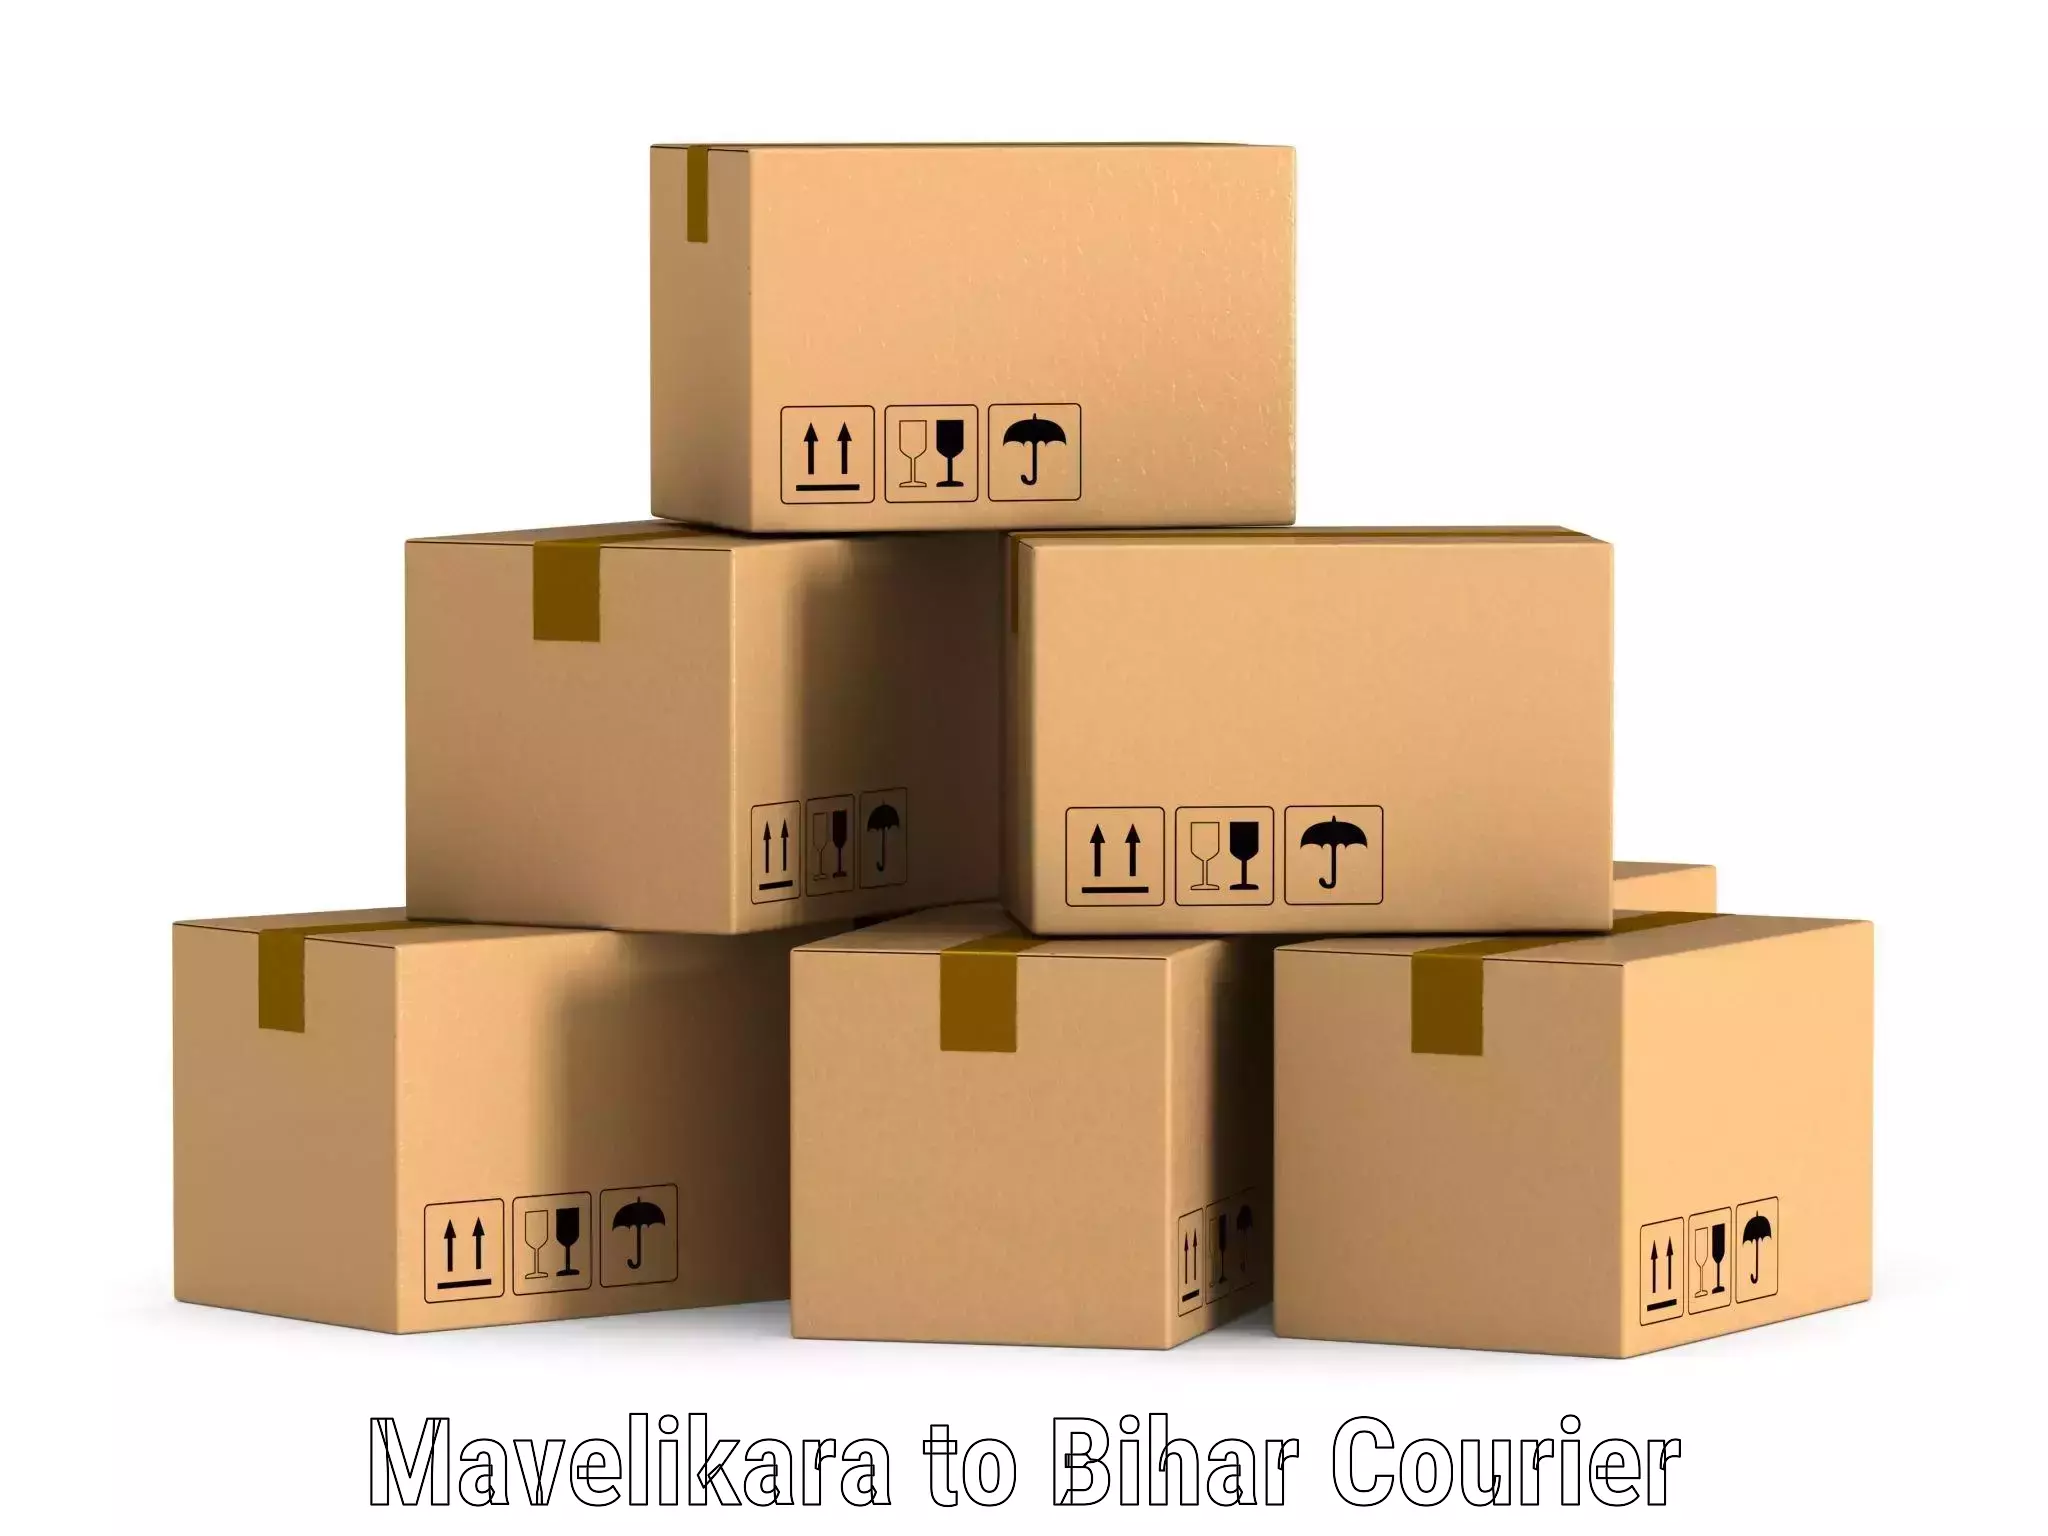 Comprehensive shipping network Mavelikara to Malmaliya